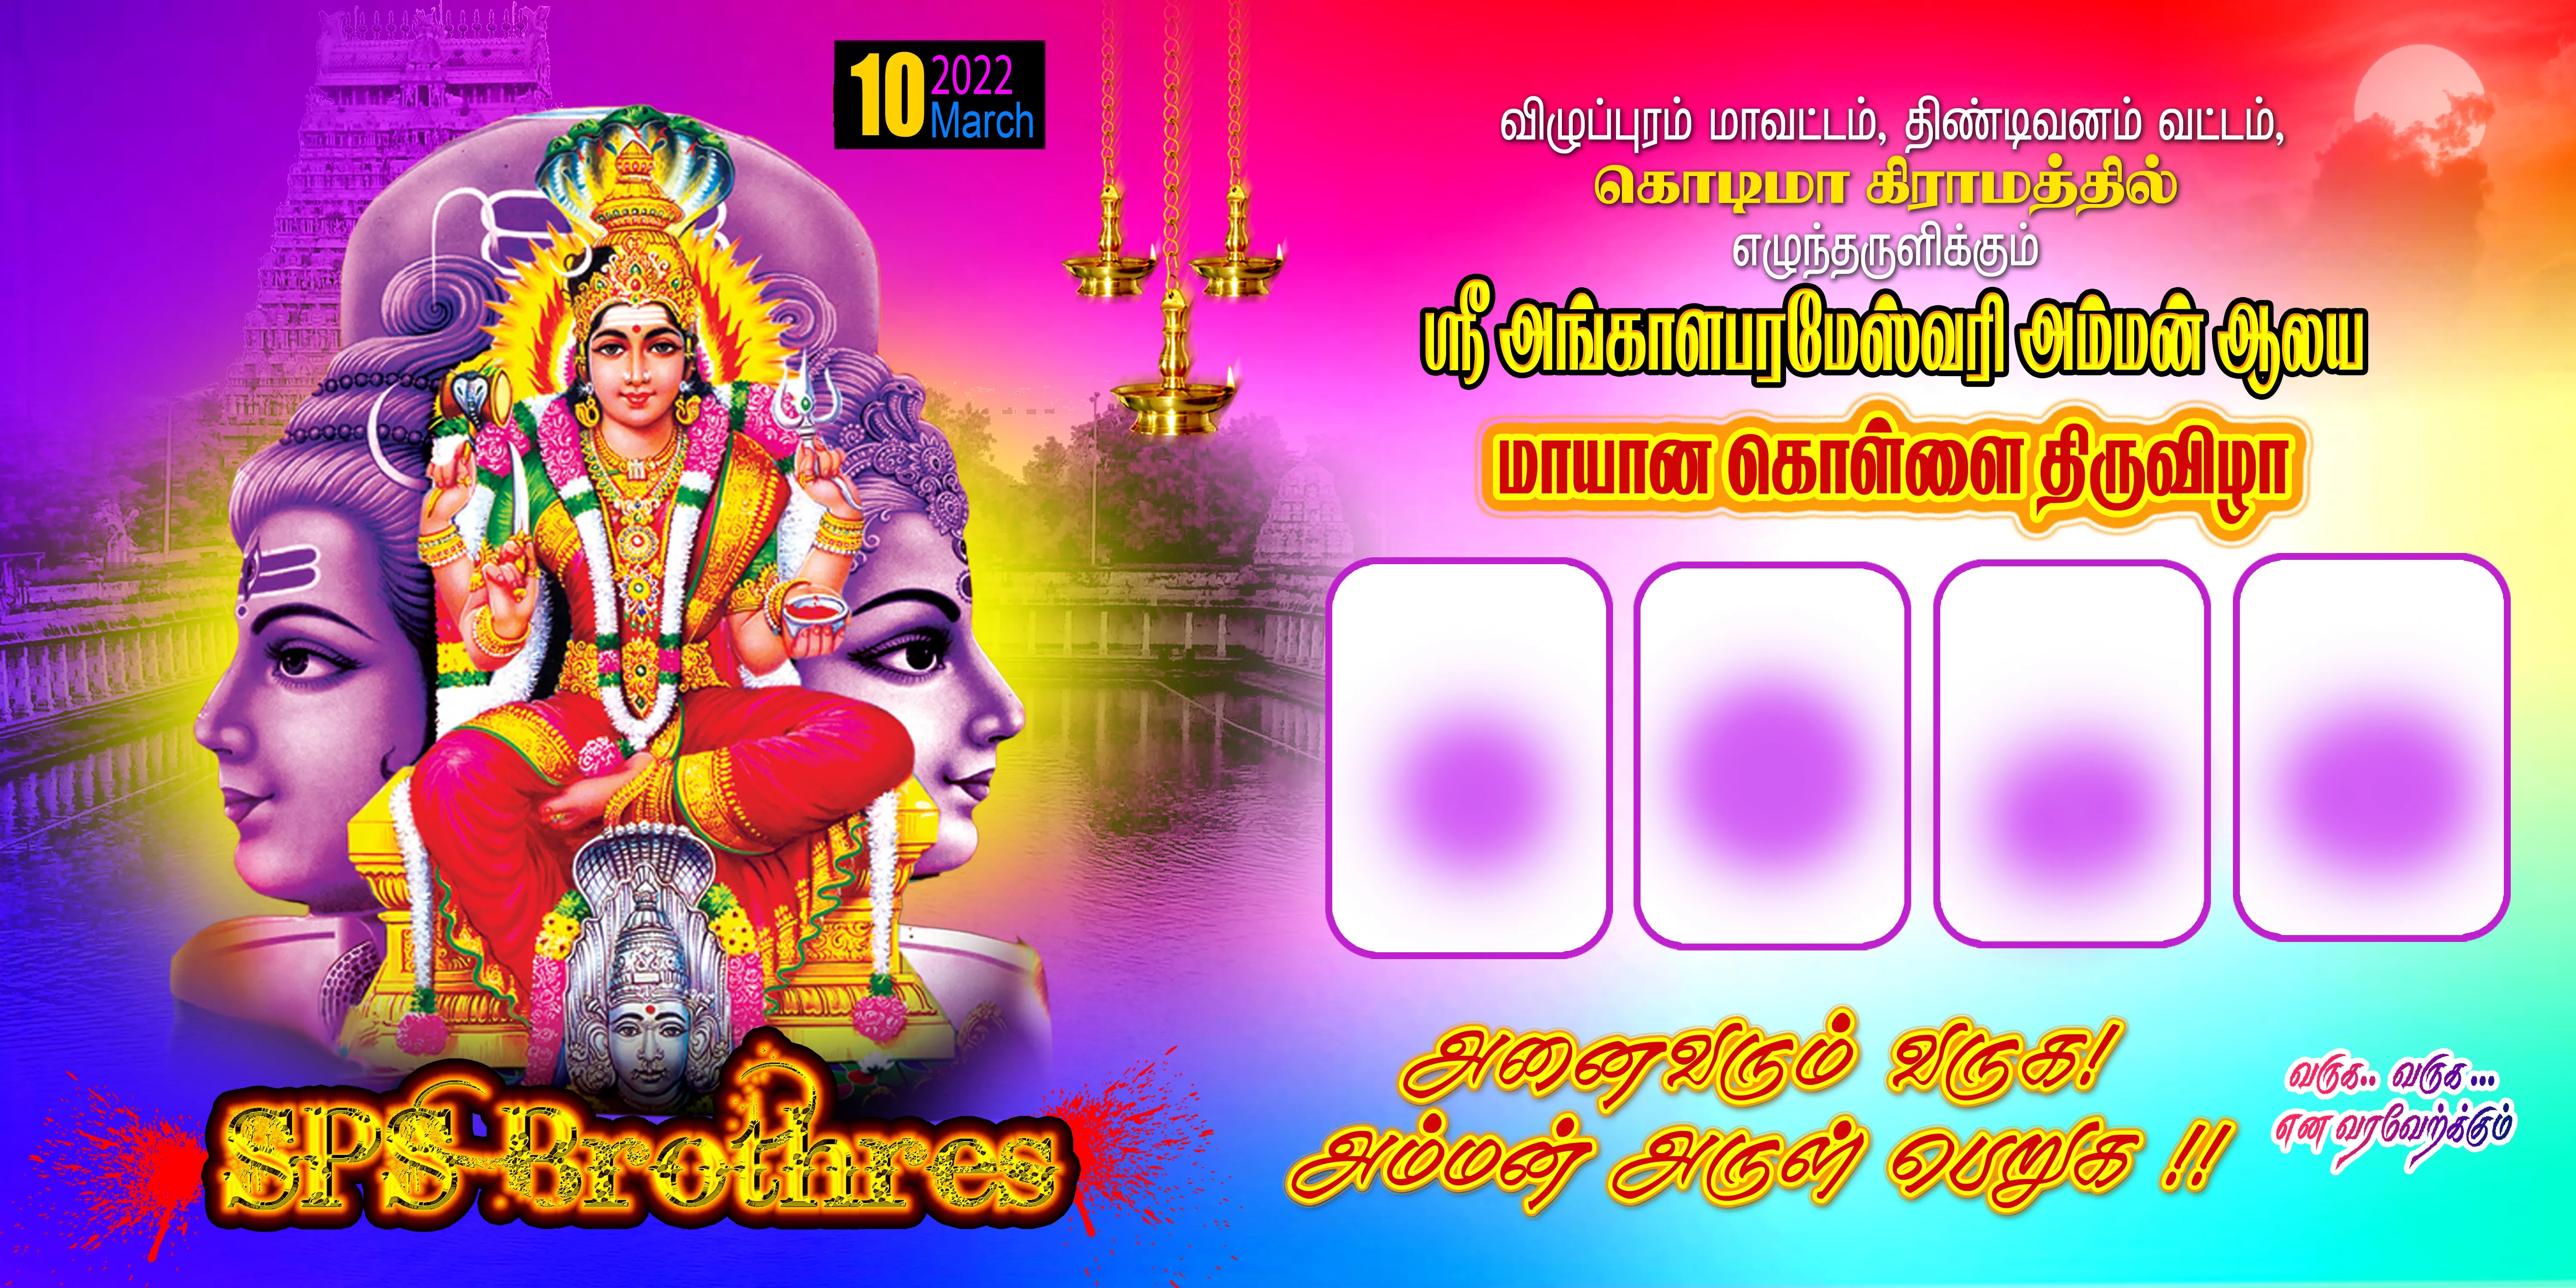 Thiruvizha flex banner Design Psd Free Download - Kumaran Network